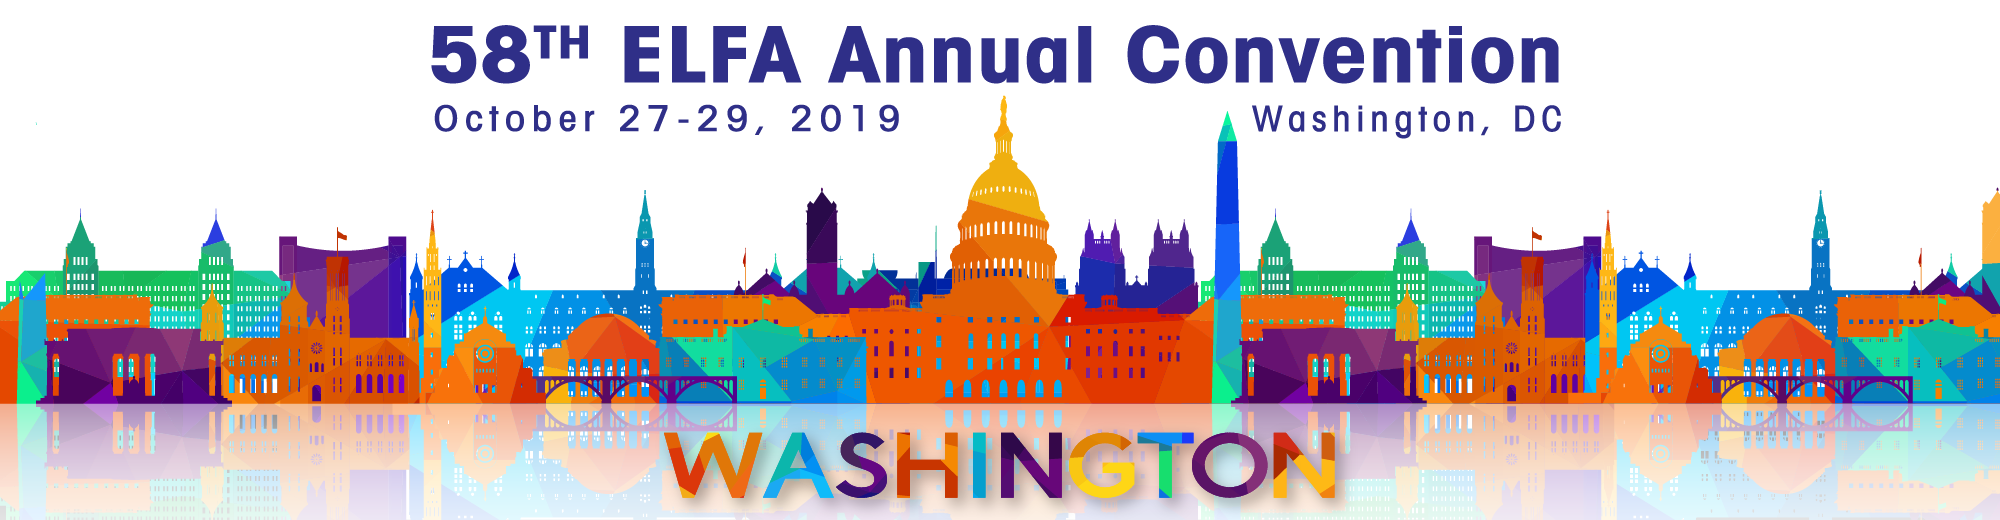 ELFA 58th Annual Convention: Washington, DC